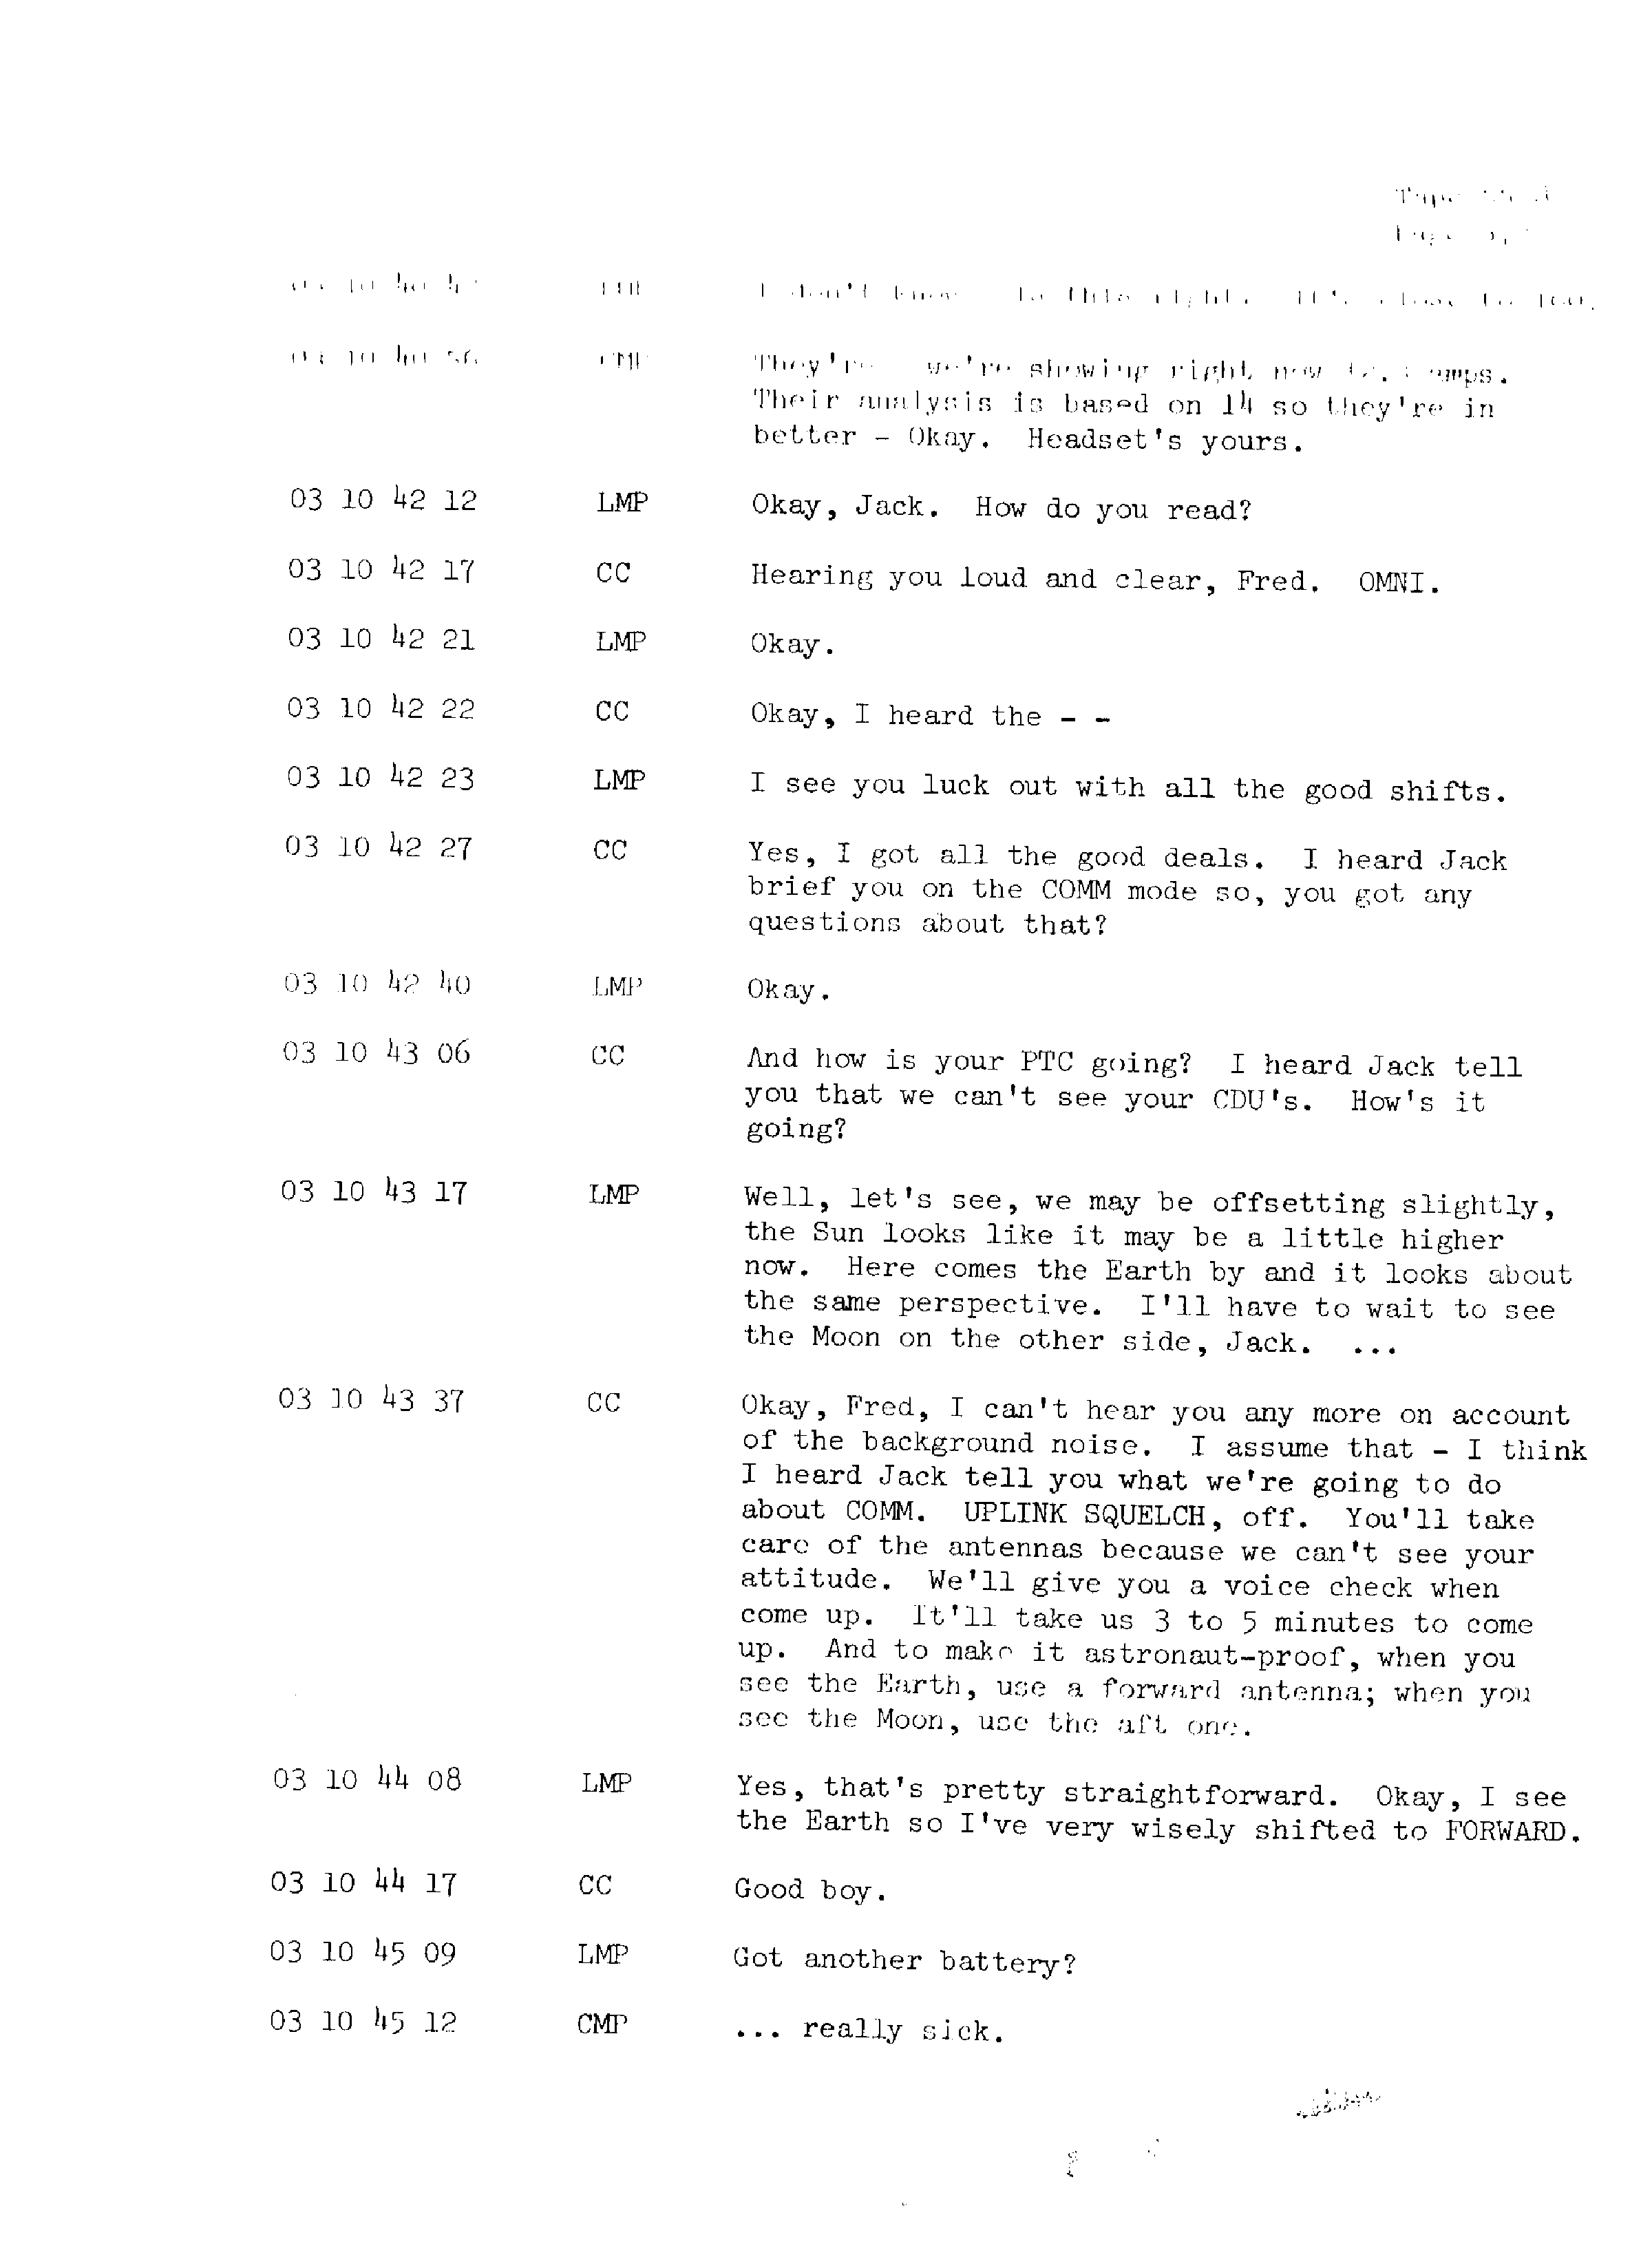 Page 379 of Apollo 13’s original transcript